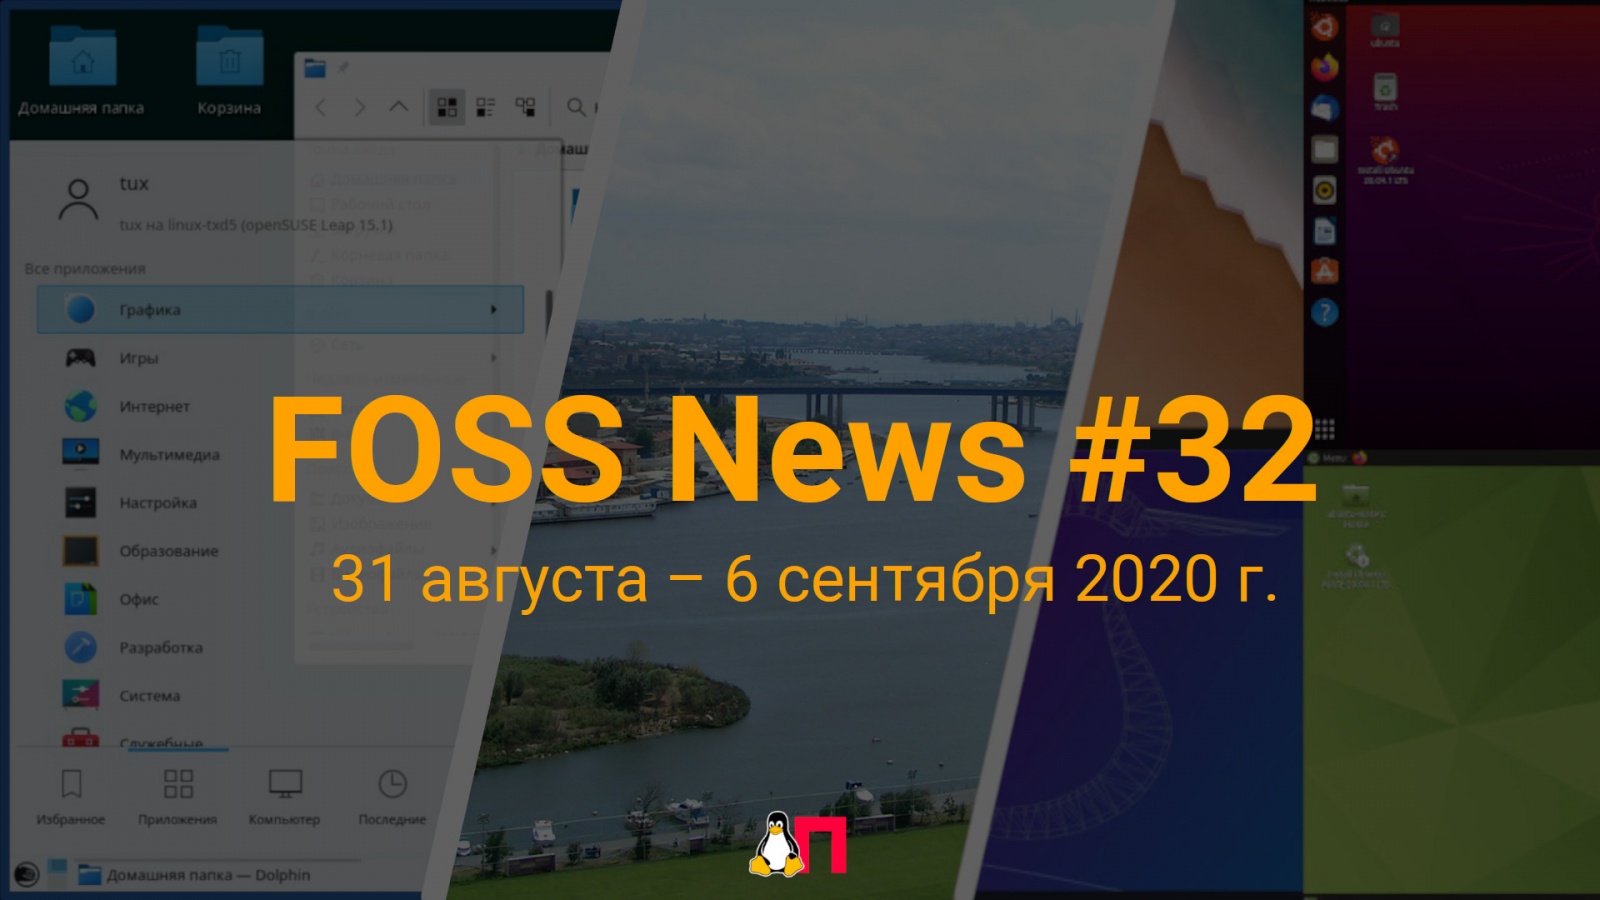 FOSS News №32 – дайджест новостей свободного и открытого ПО за 31 августа — 6 сентября 2020 года - 1